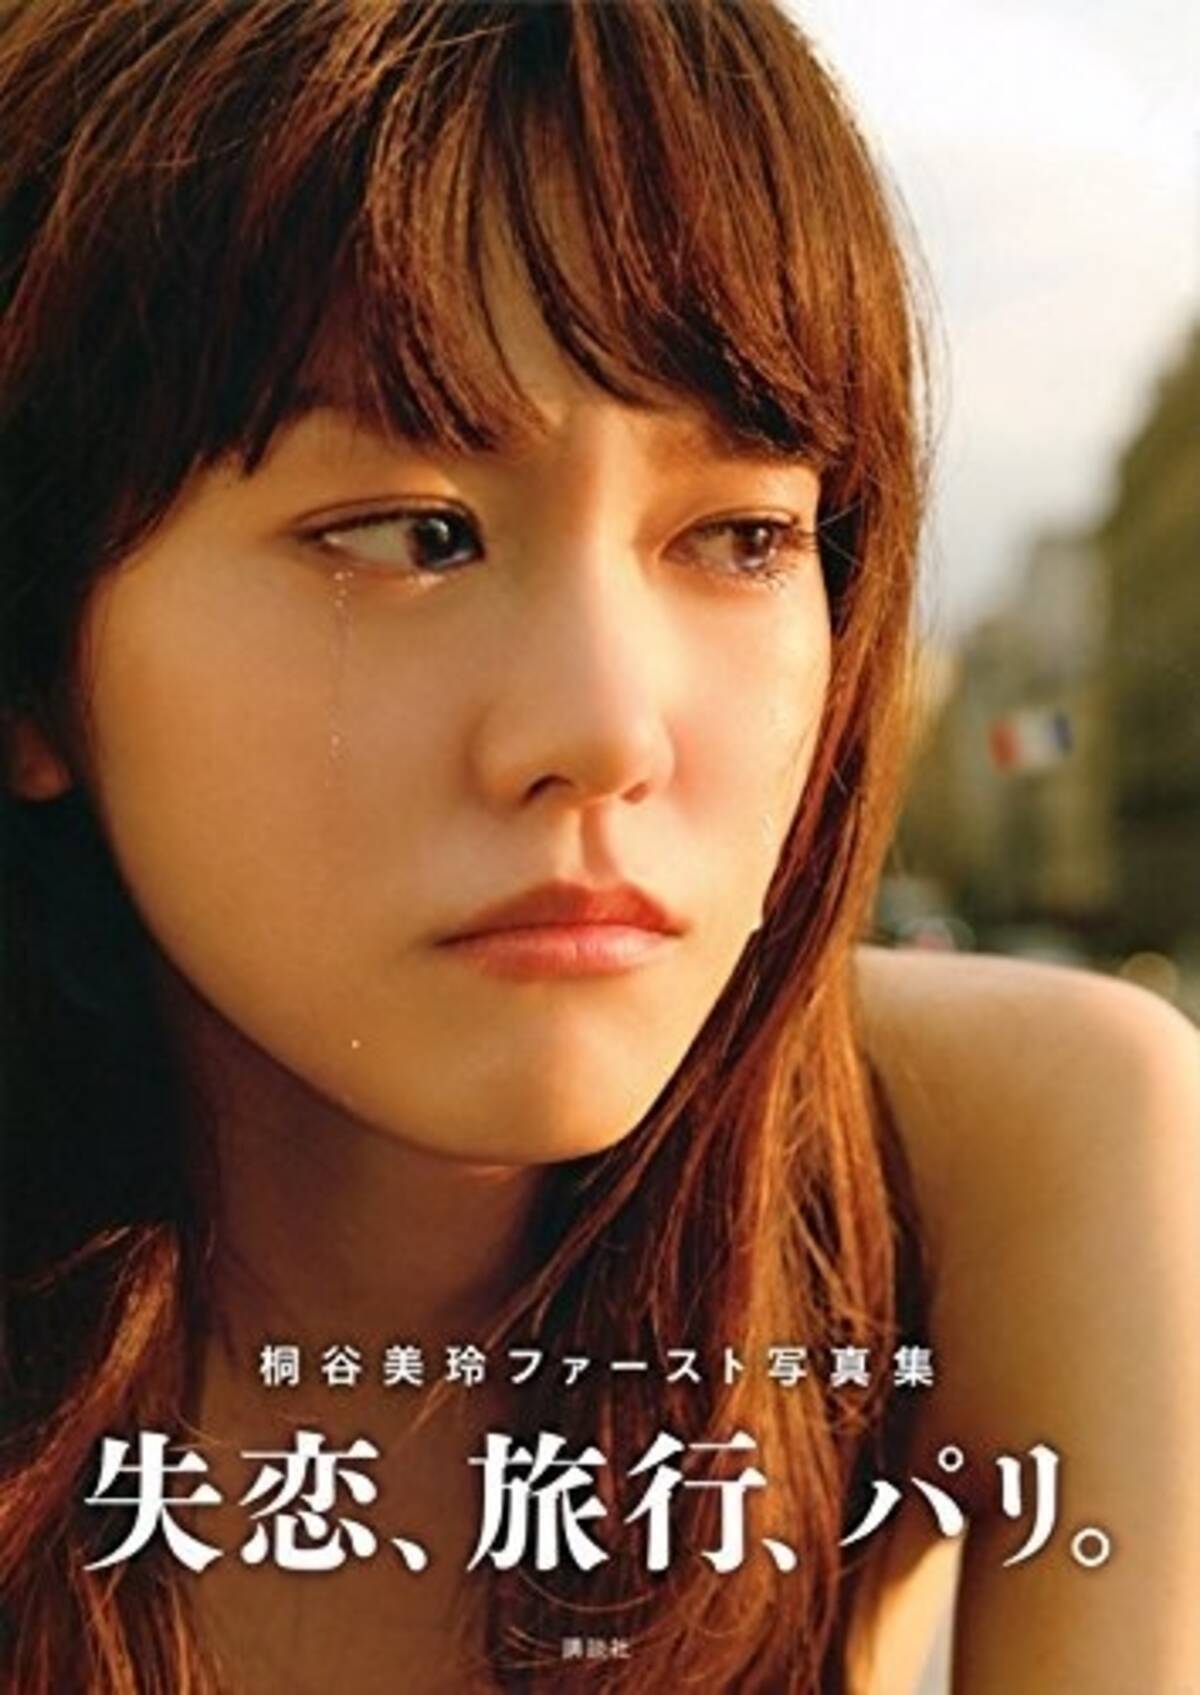 イケメン陣の悪評が影響 桐谷美玲主演ドラマが低調のワケ 16年8月11日 エキサイトニュース